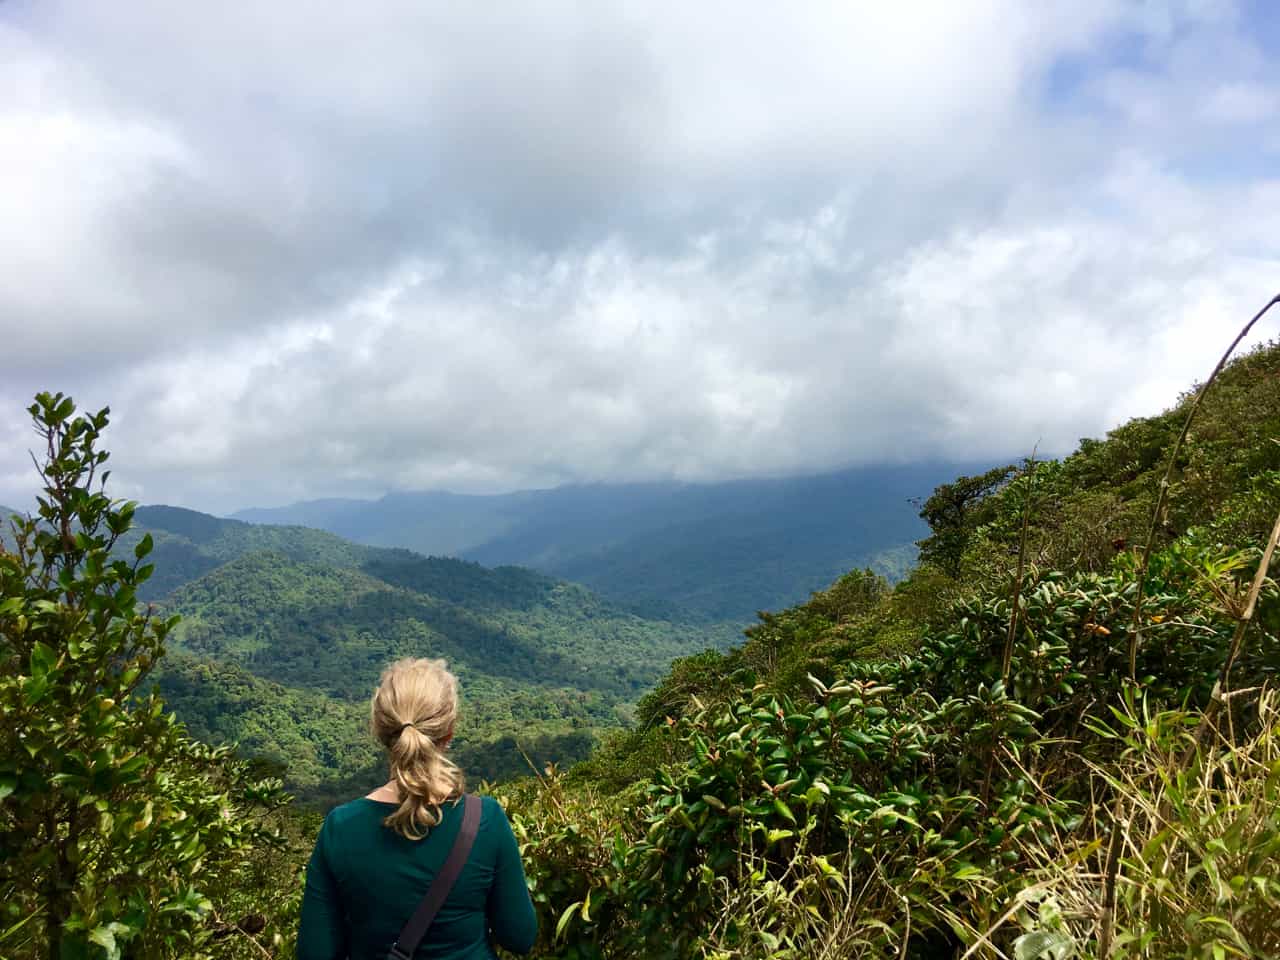 näkymät mantereelle erkanevat tuulisesta Mirador La Ventanasta Monteverde-pilvimetsässä.